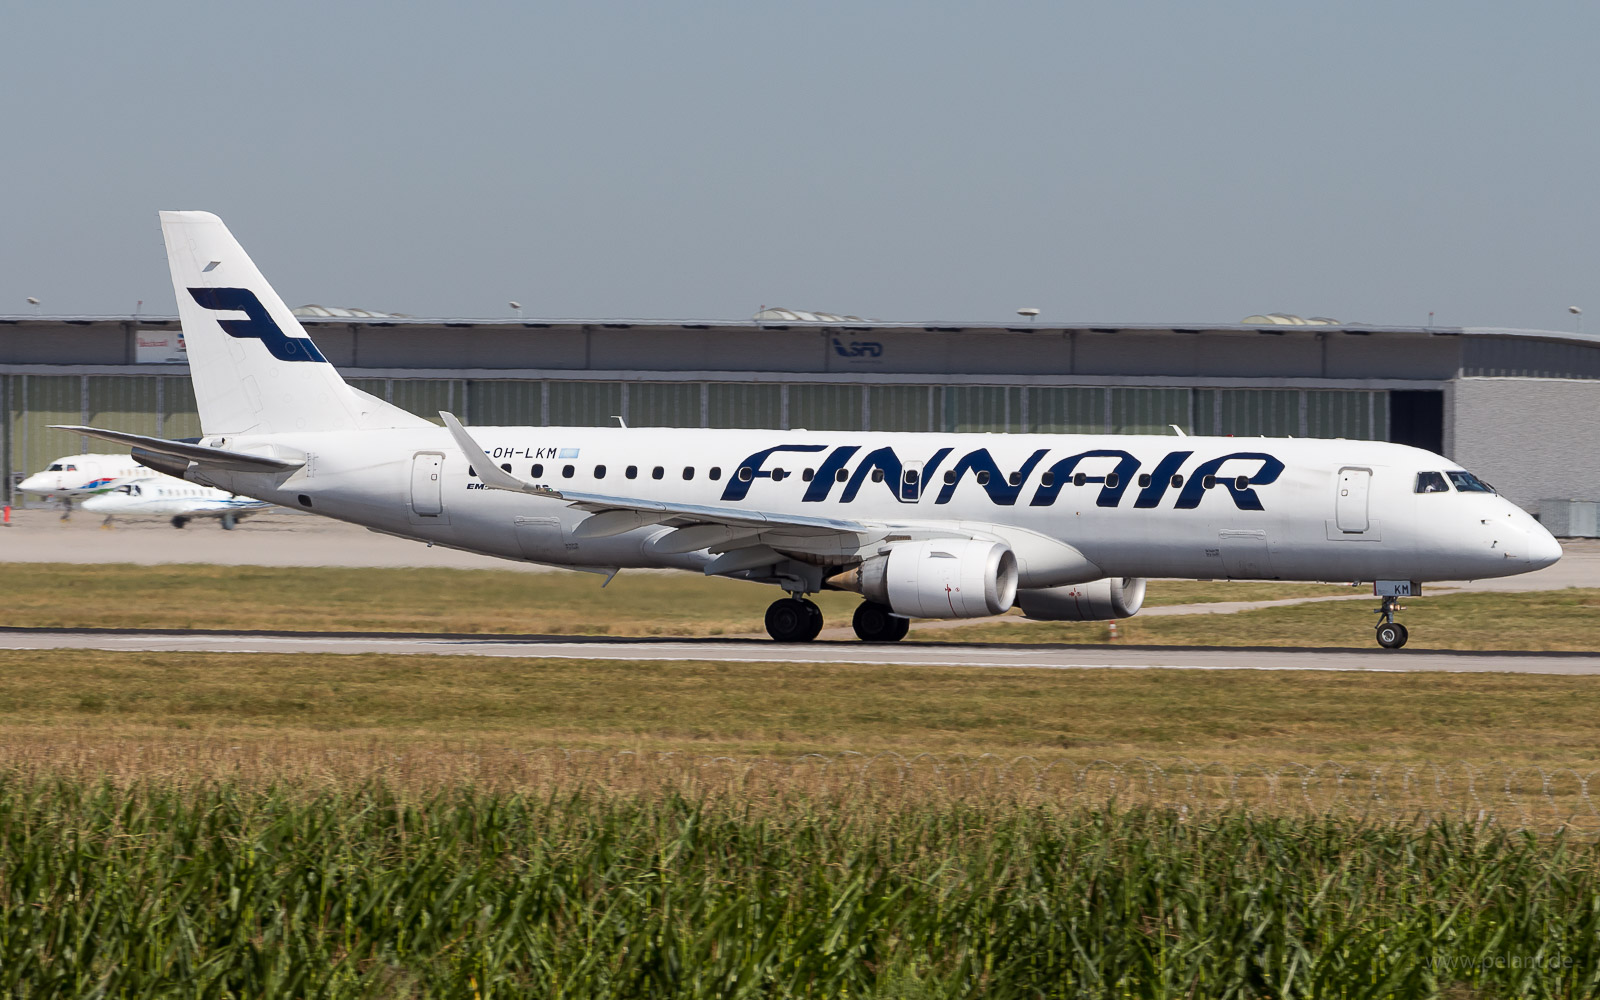 OH-LKM Finnair Embraer ERJ-190LR in Stuttgart / STR